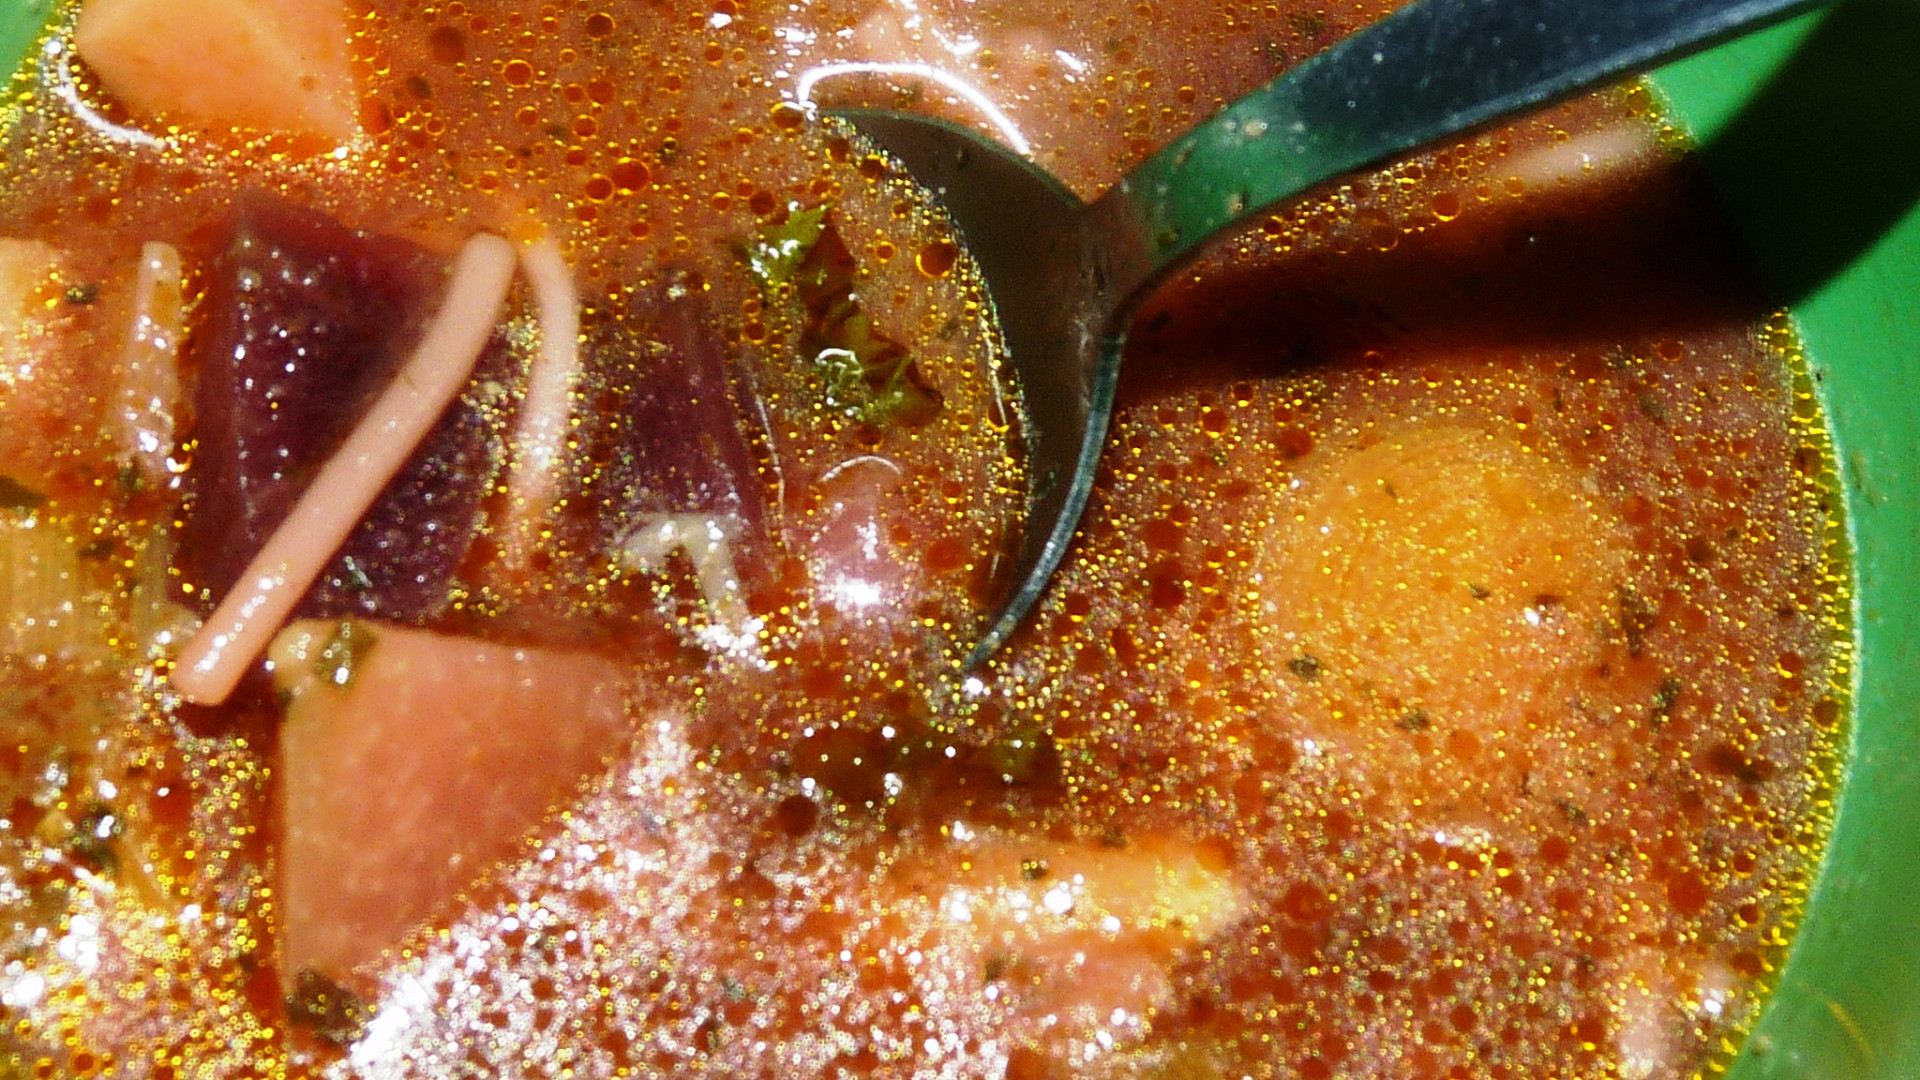 Kedlubno pórkovo řepná polévečka s nudlemi